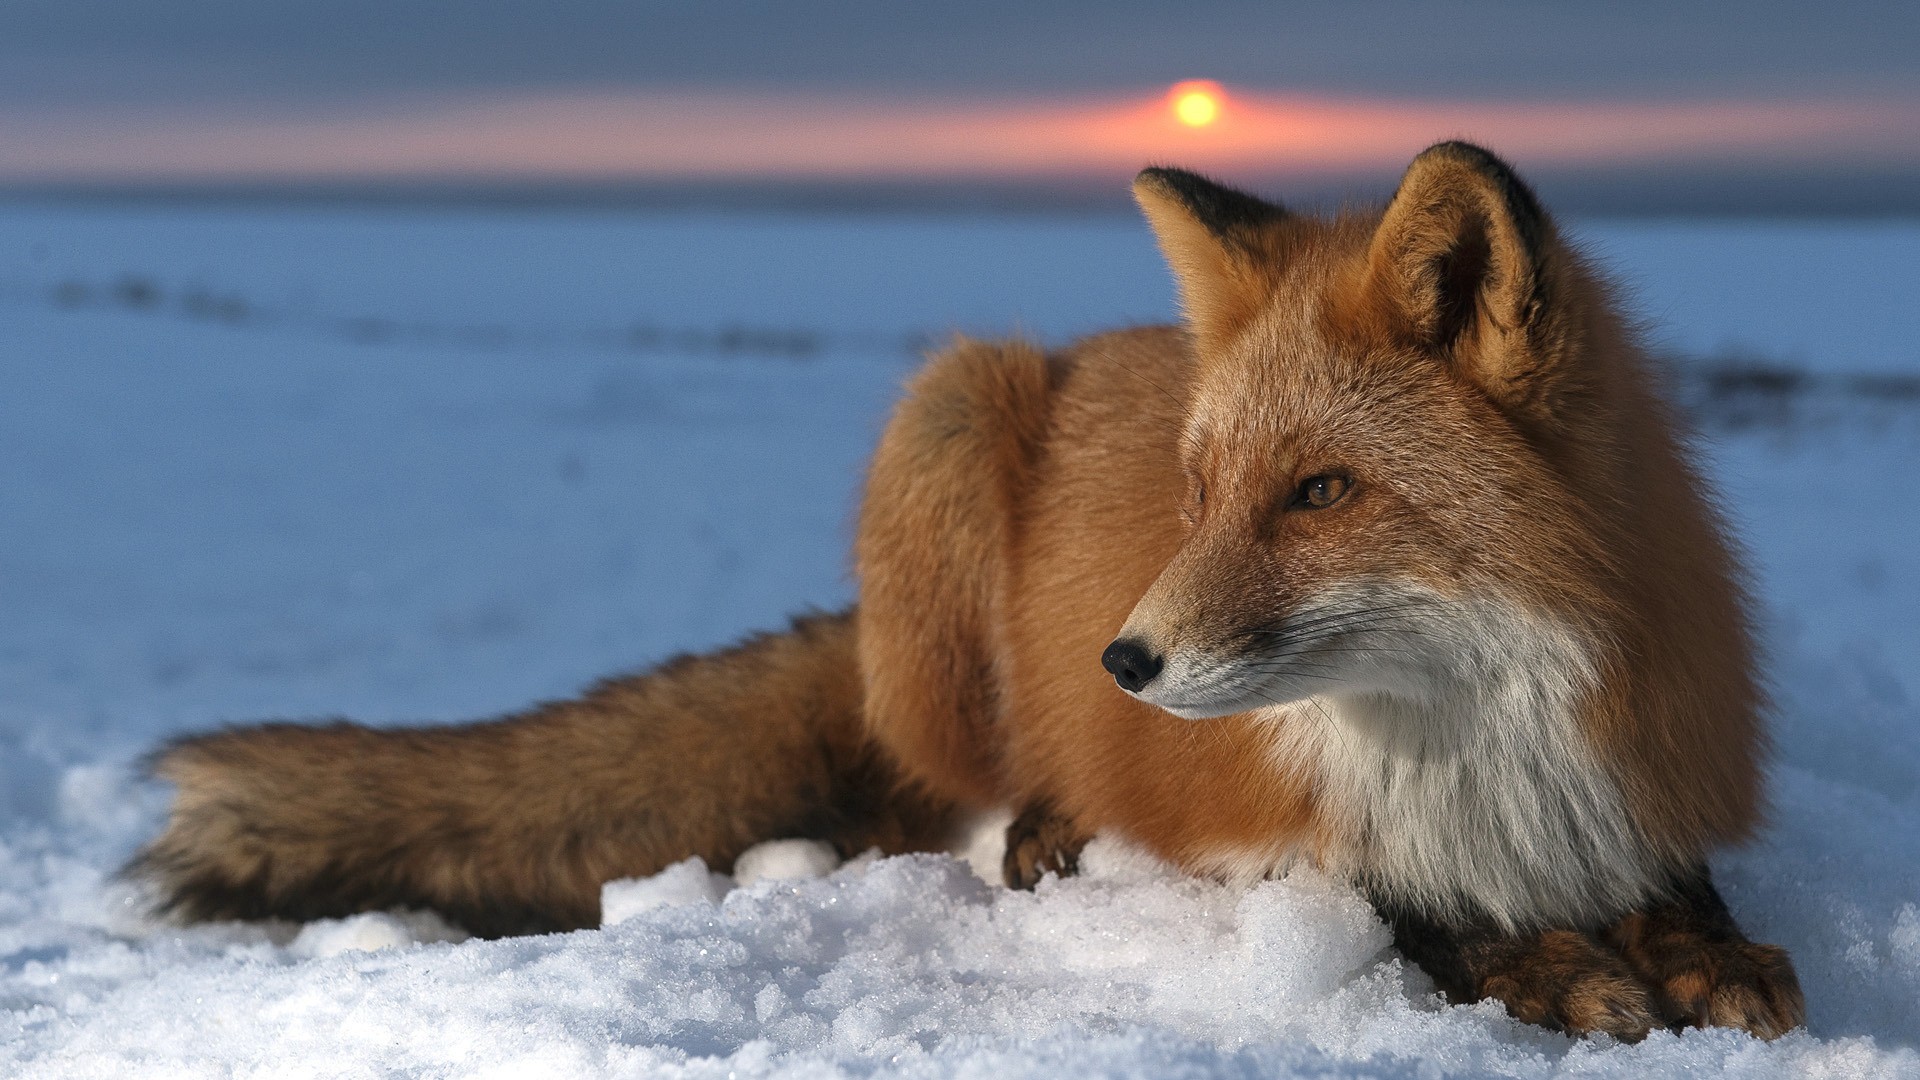 Snow Sun foxes wallpaper 1920x1080 65460 WallpaperUP